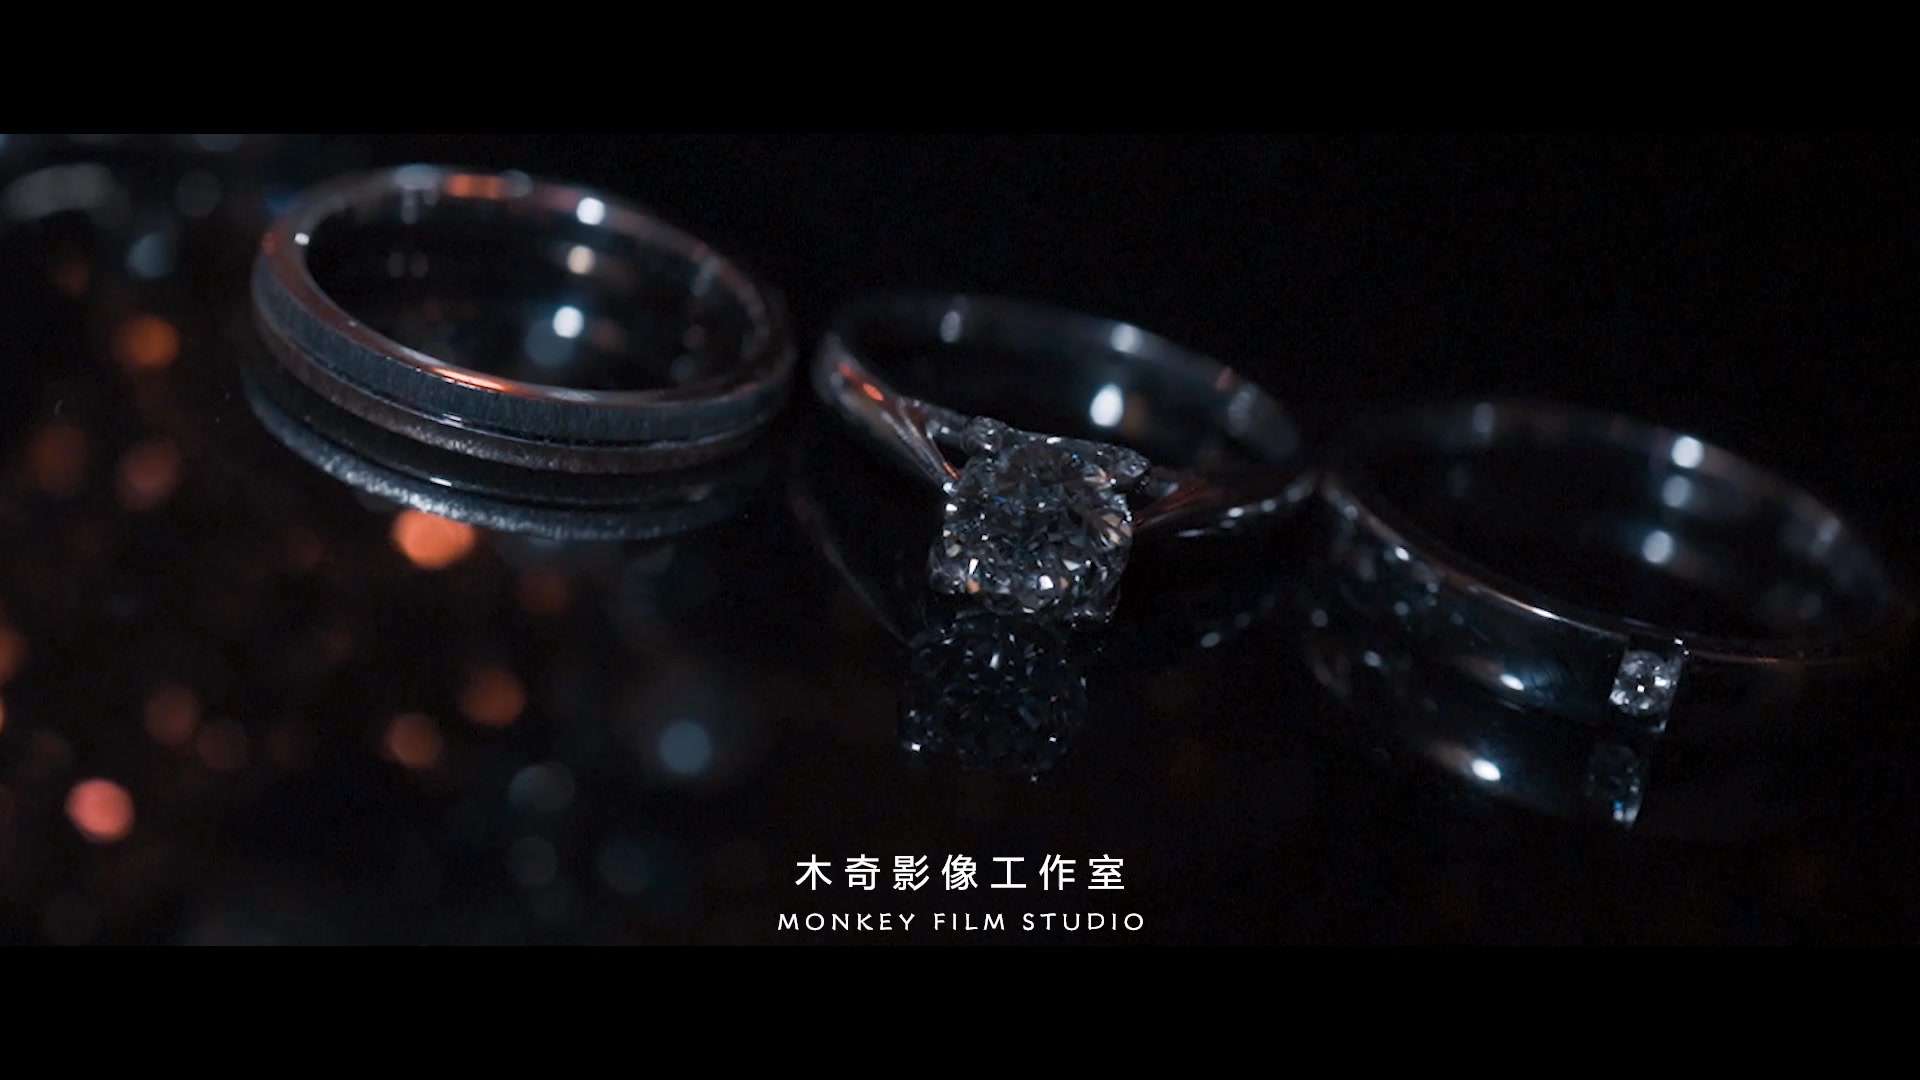 木奇影视双机婚礼短片ZXJ&CJL